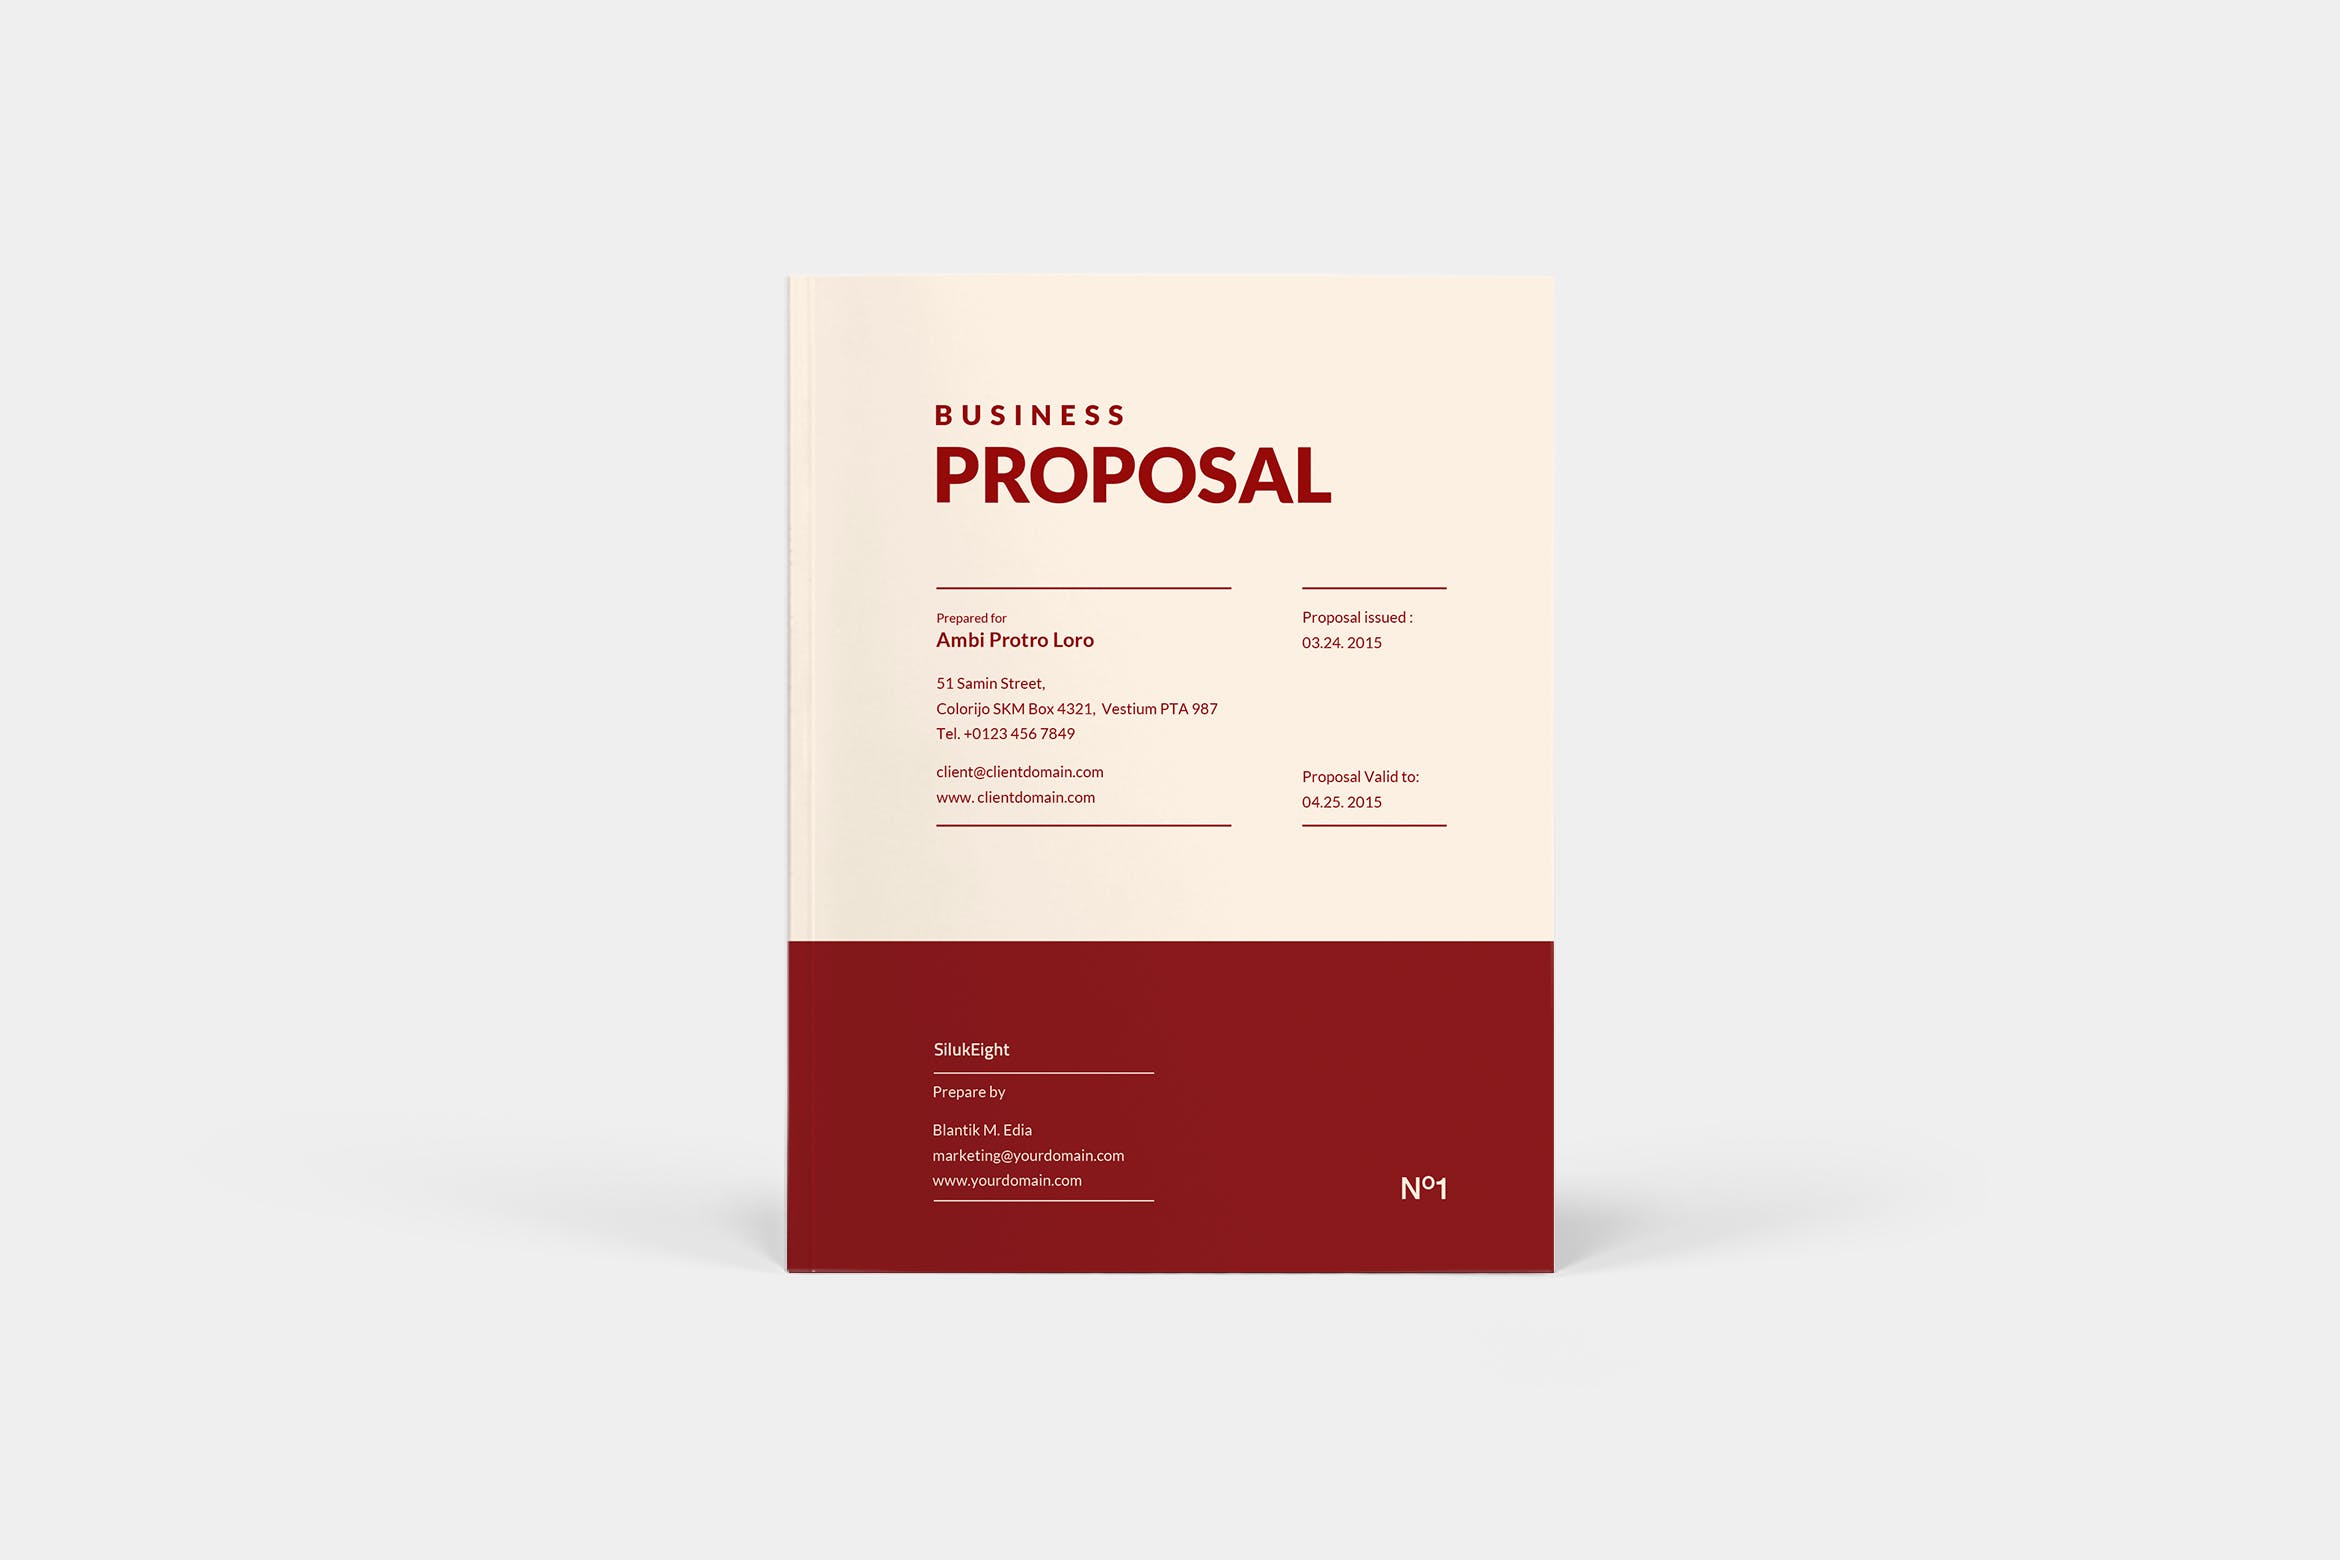 商业计划书/投标标书设计模板 Business Proposal插图